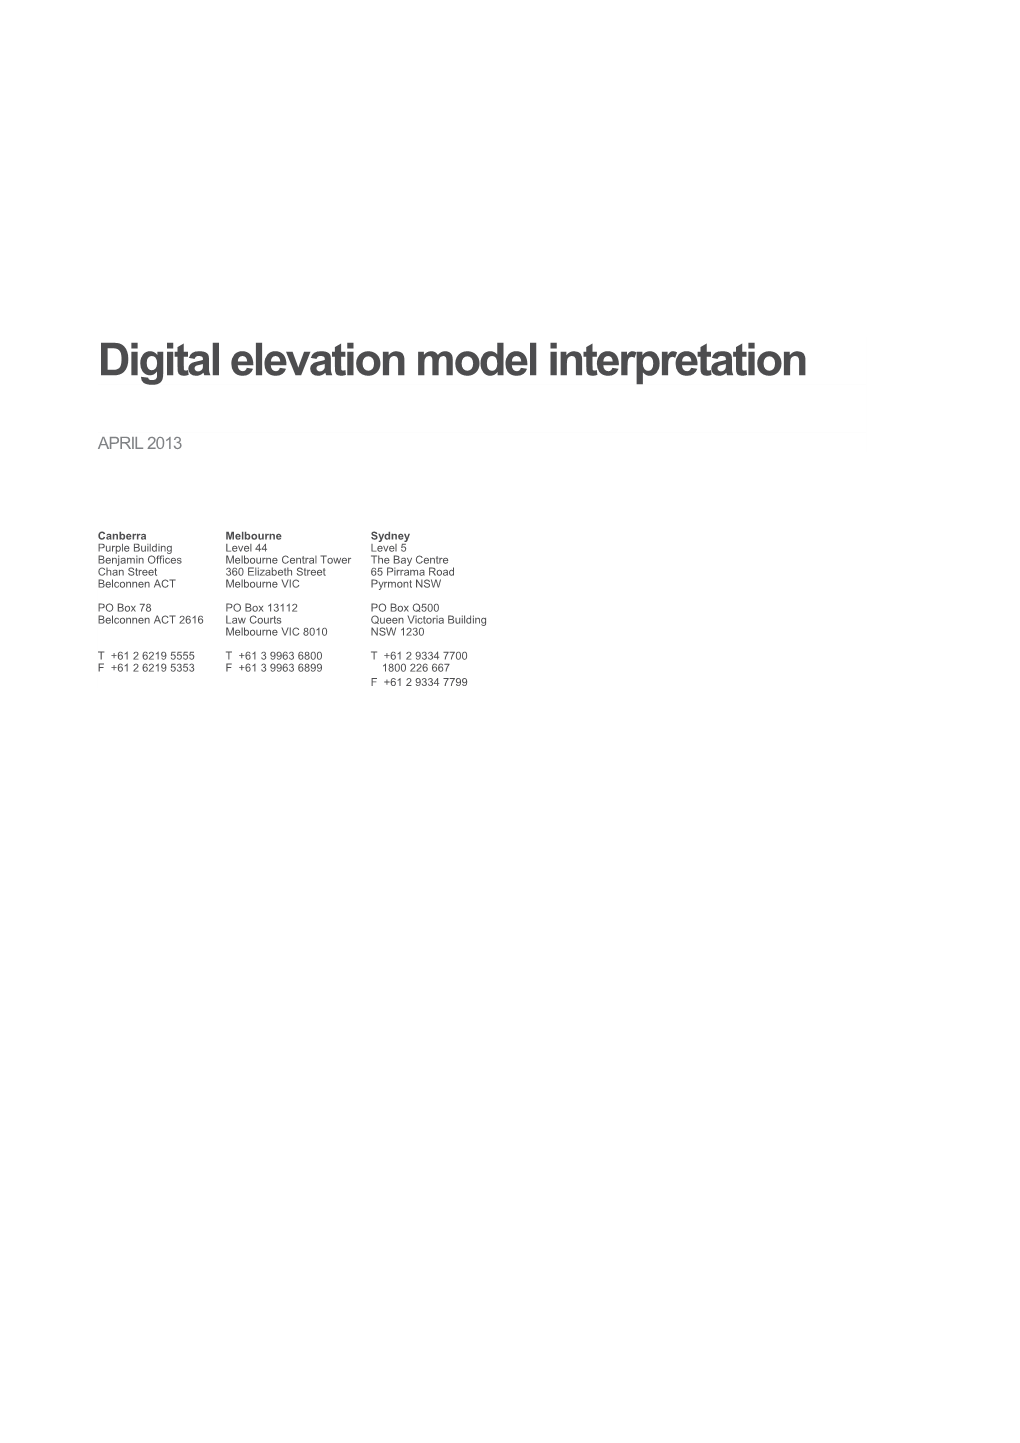 Digital Elevation Model Interpretation